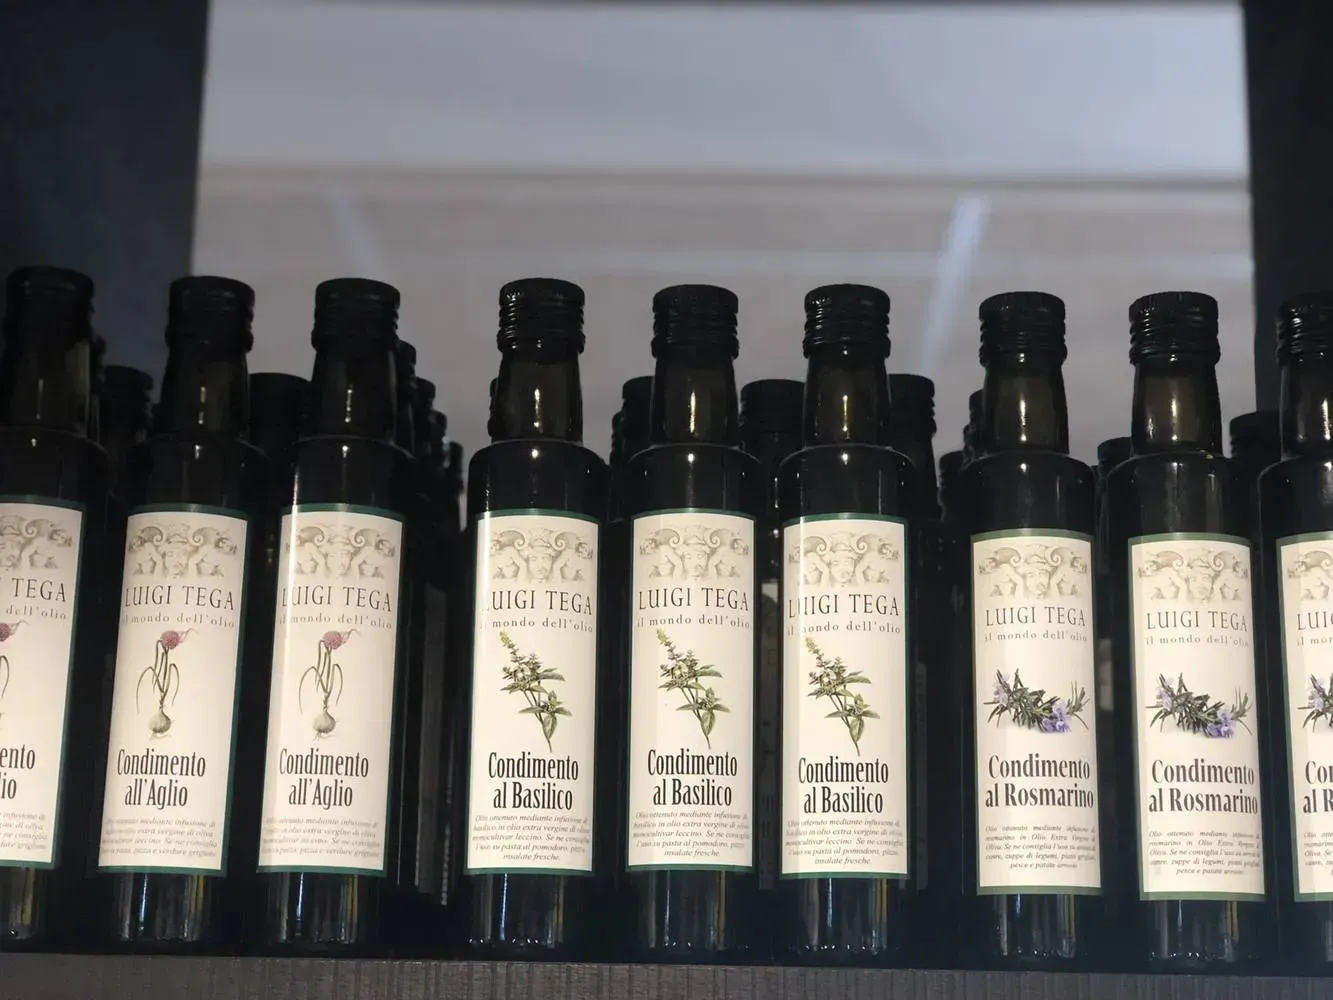 De lekkerste olijfolie, rechtstreeks uit Italie